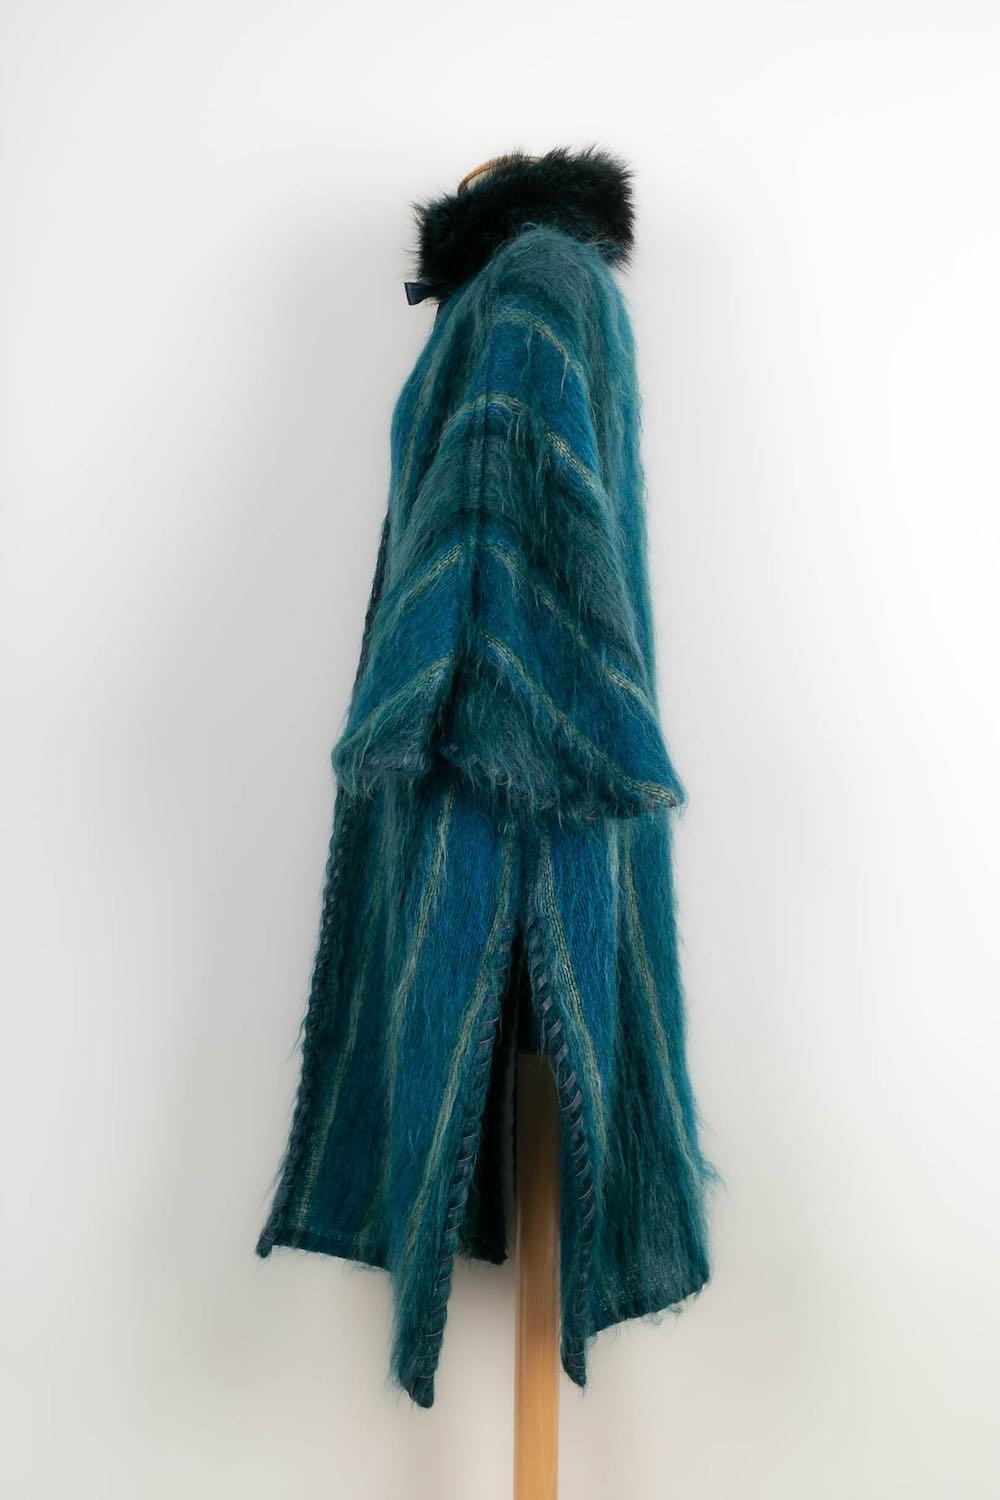 Dior -(Made in France) Langer Mantel aus Mohair und Pelz in verschiedenen Blautönen. Kein Größenetikett, passt für 38FR/40FR/42FR

Zusätzliche Informationen: 
Abmessungen: Länge: 110 cm
Zustand: Sehr guter Zustand
Verkäufer Ref Nummer: M17BIS